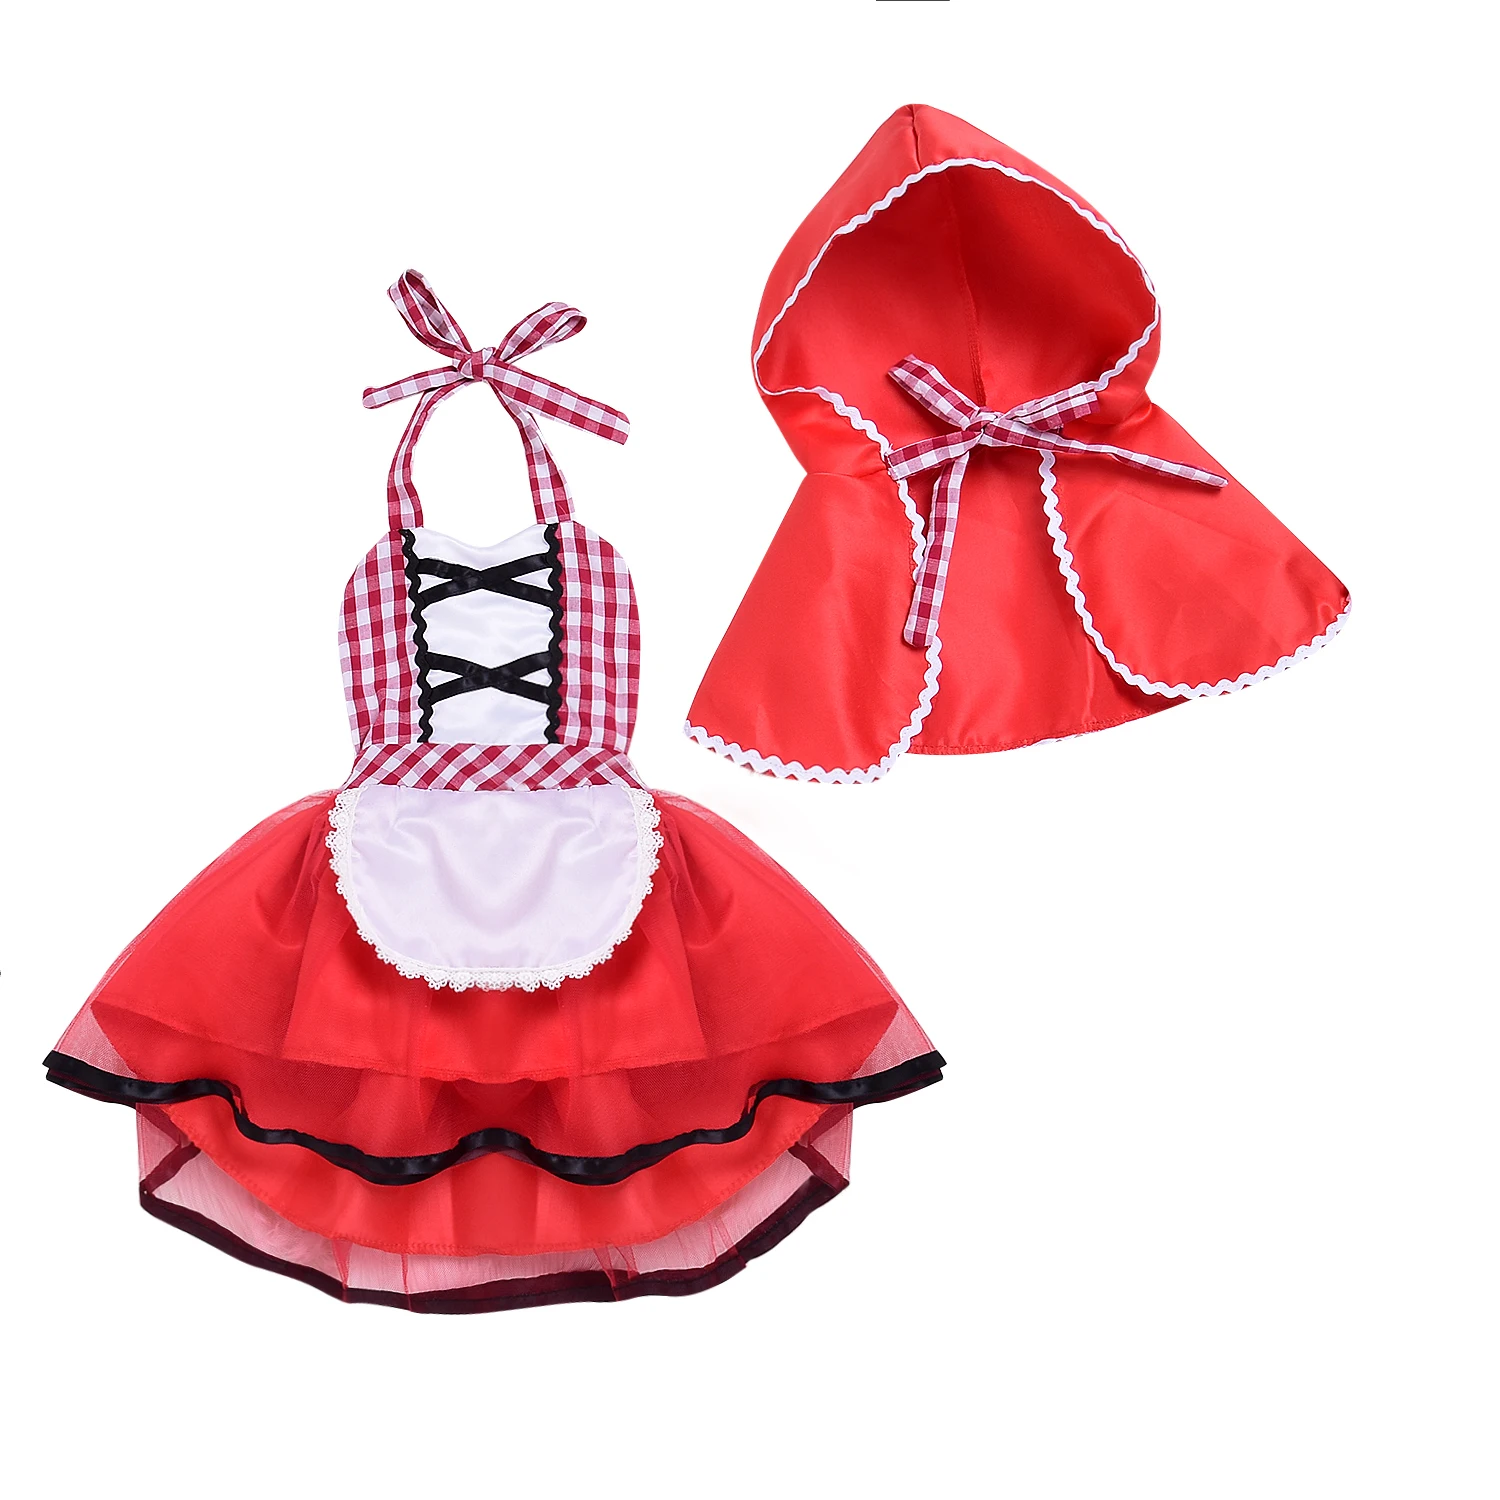 Pudcoco/милый комплект для костюмированной вечеринки, Красная Шапочка для верховой езды, фатиновая юбка-пачка для новорожденных девочек, кружевное нарядное платье+ накидка на возраст от 0 до 24 месяцев